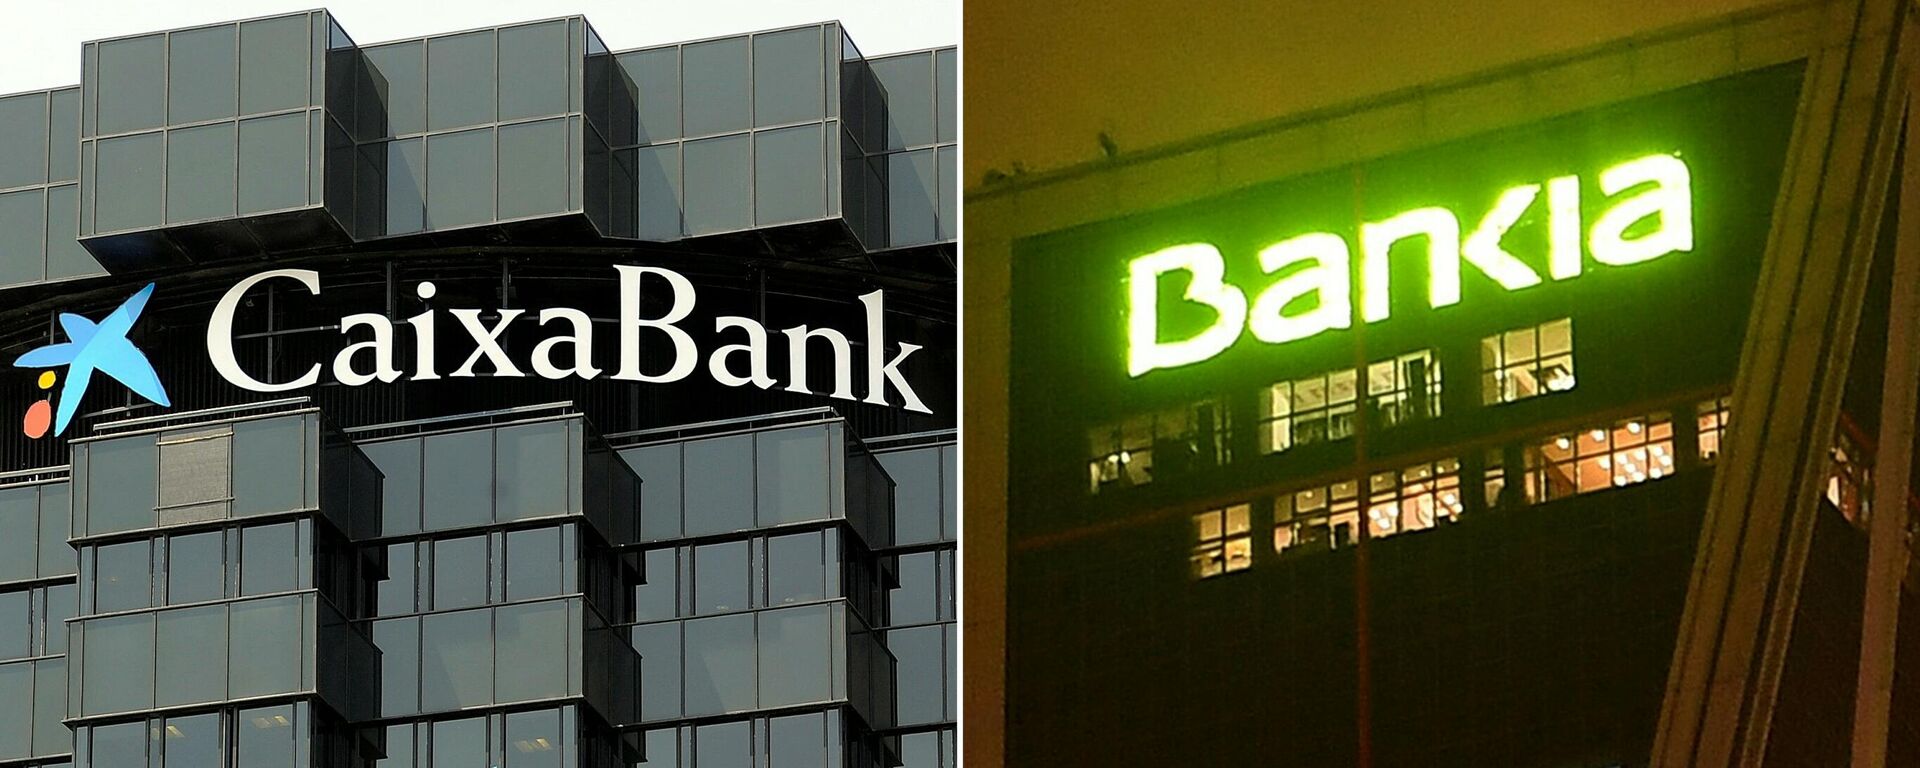 CaixaBank y Bankia se fusionan - Sputnik Mundo, 1920, 06.05.2021